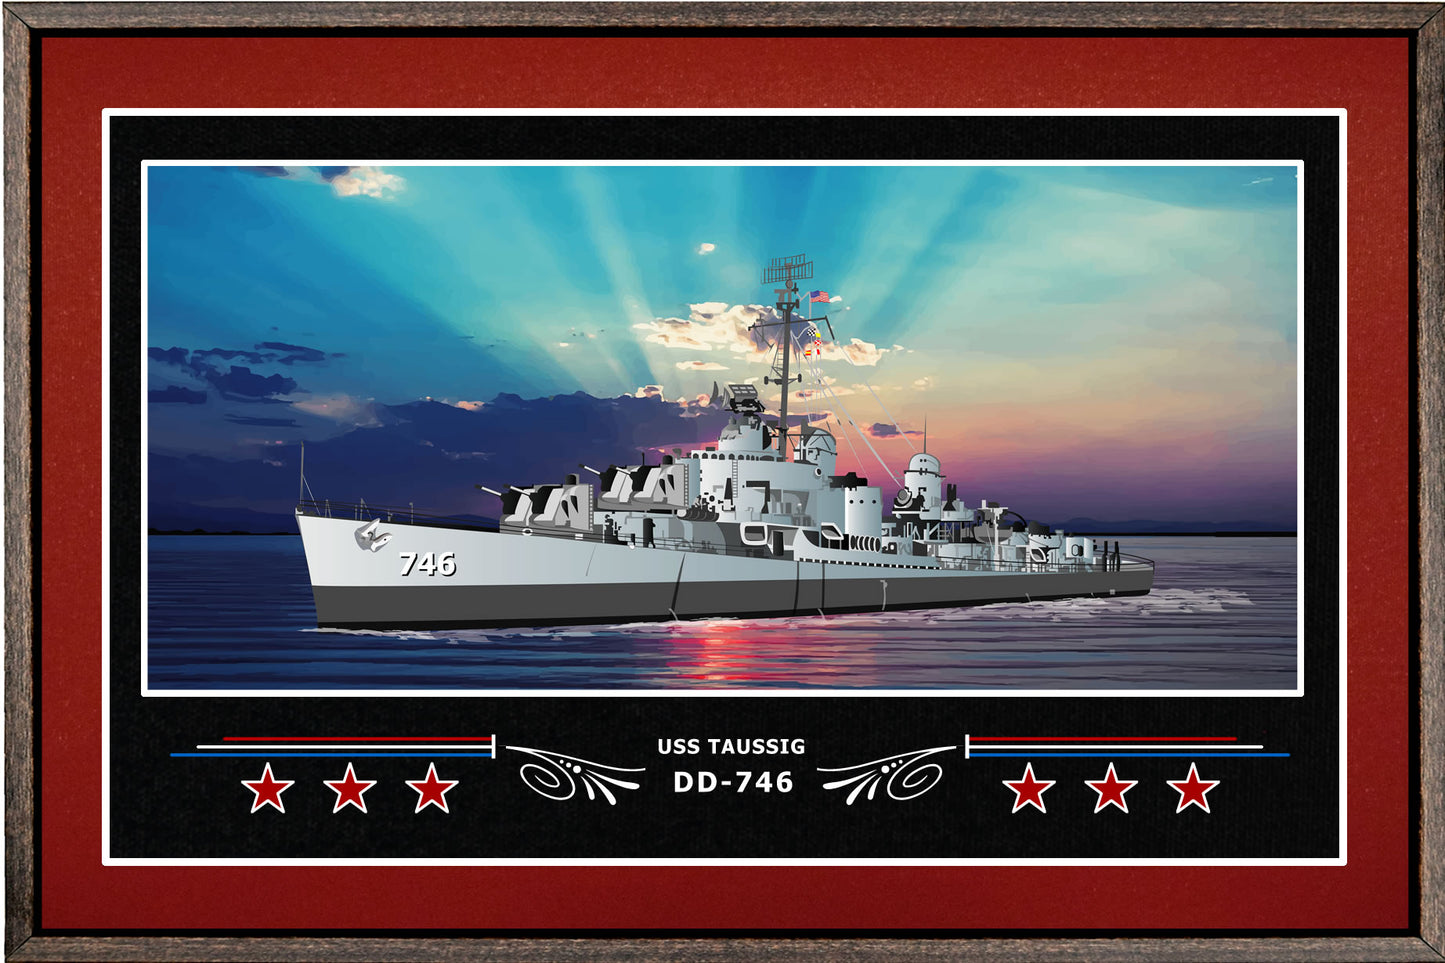 USS TAUSSIG DD 746 BOX FRAMED CANVAS ART BURGUNDY